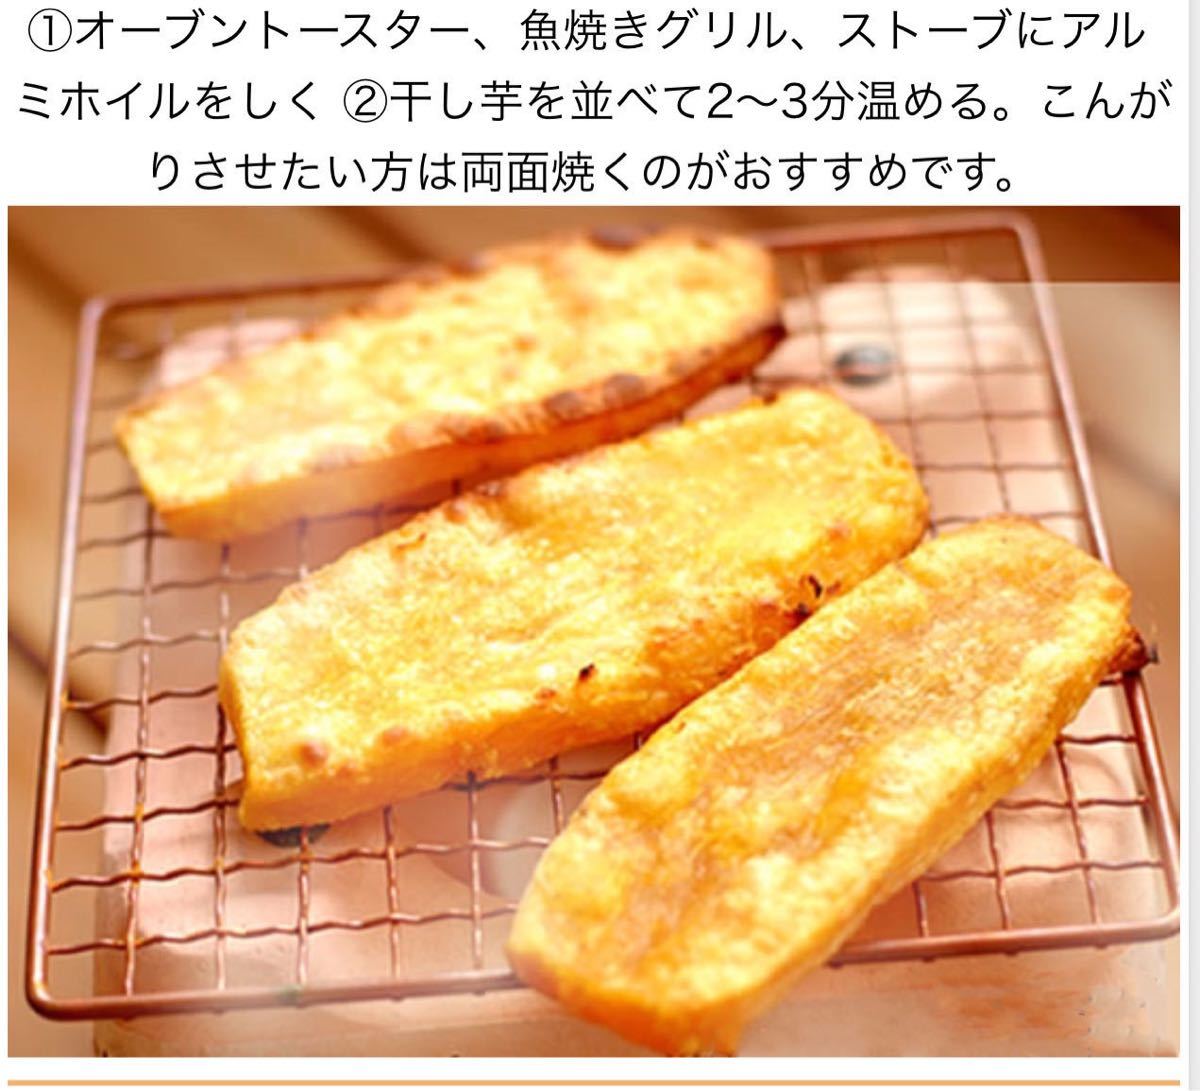  сушеный картофел Ibaraki ..... сушеный картофел .. ..C класс 3 kilo небо .. Tang .. и т.п. 